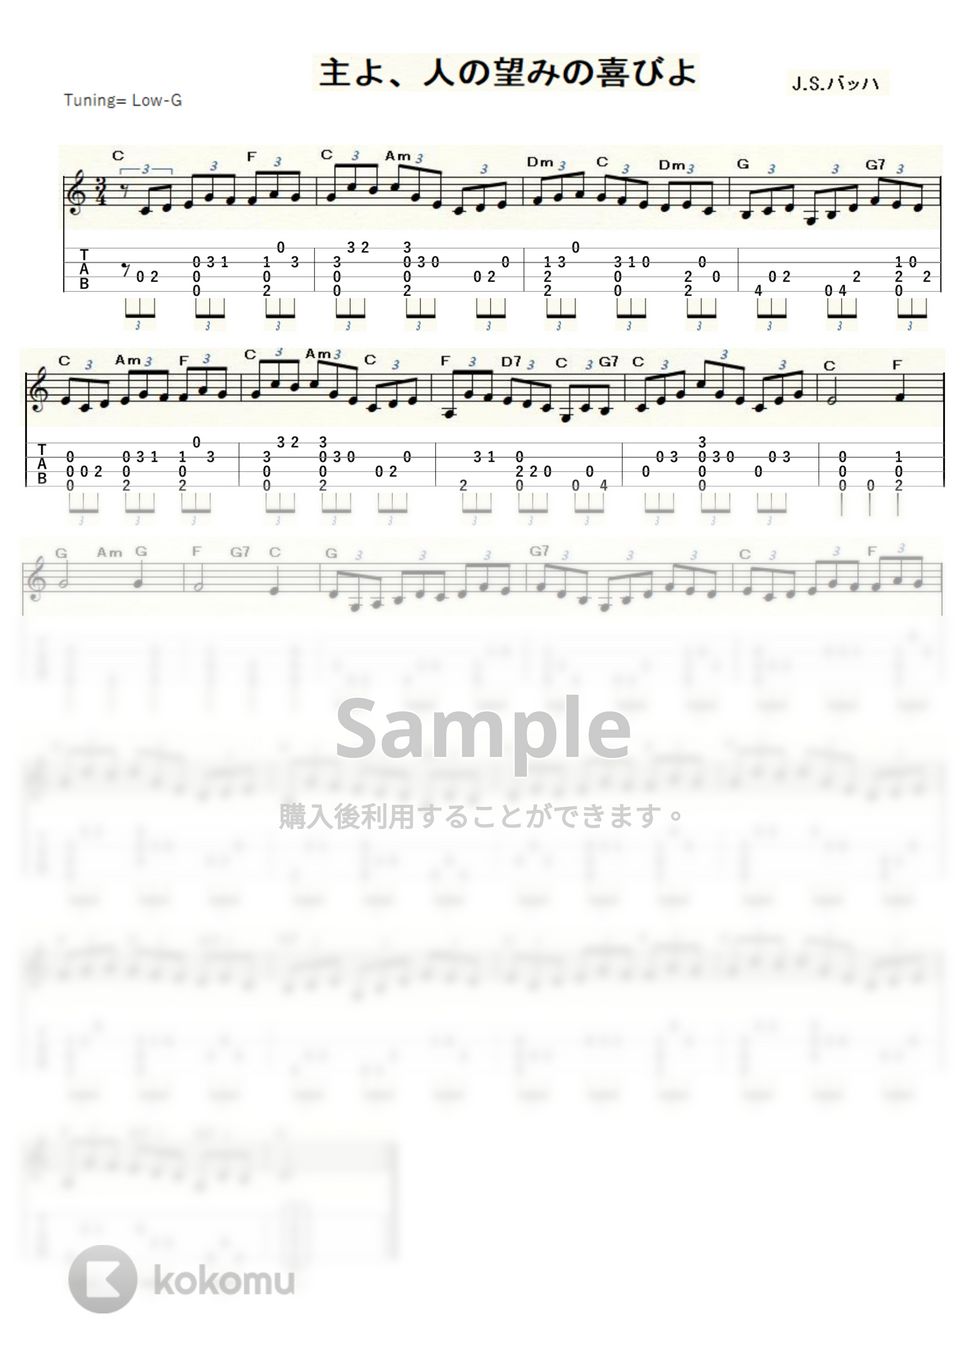 バッハ - 主よ、人の望みの喜びよ (ｳｸﾚﾚｿﾛ / Low-G / 初～中級) by ukulelepapa